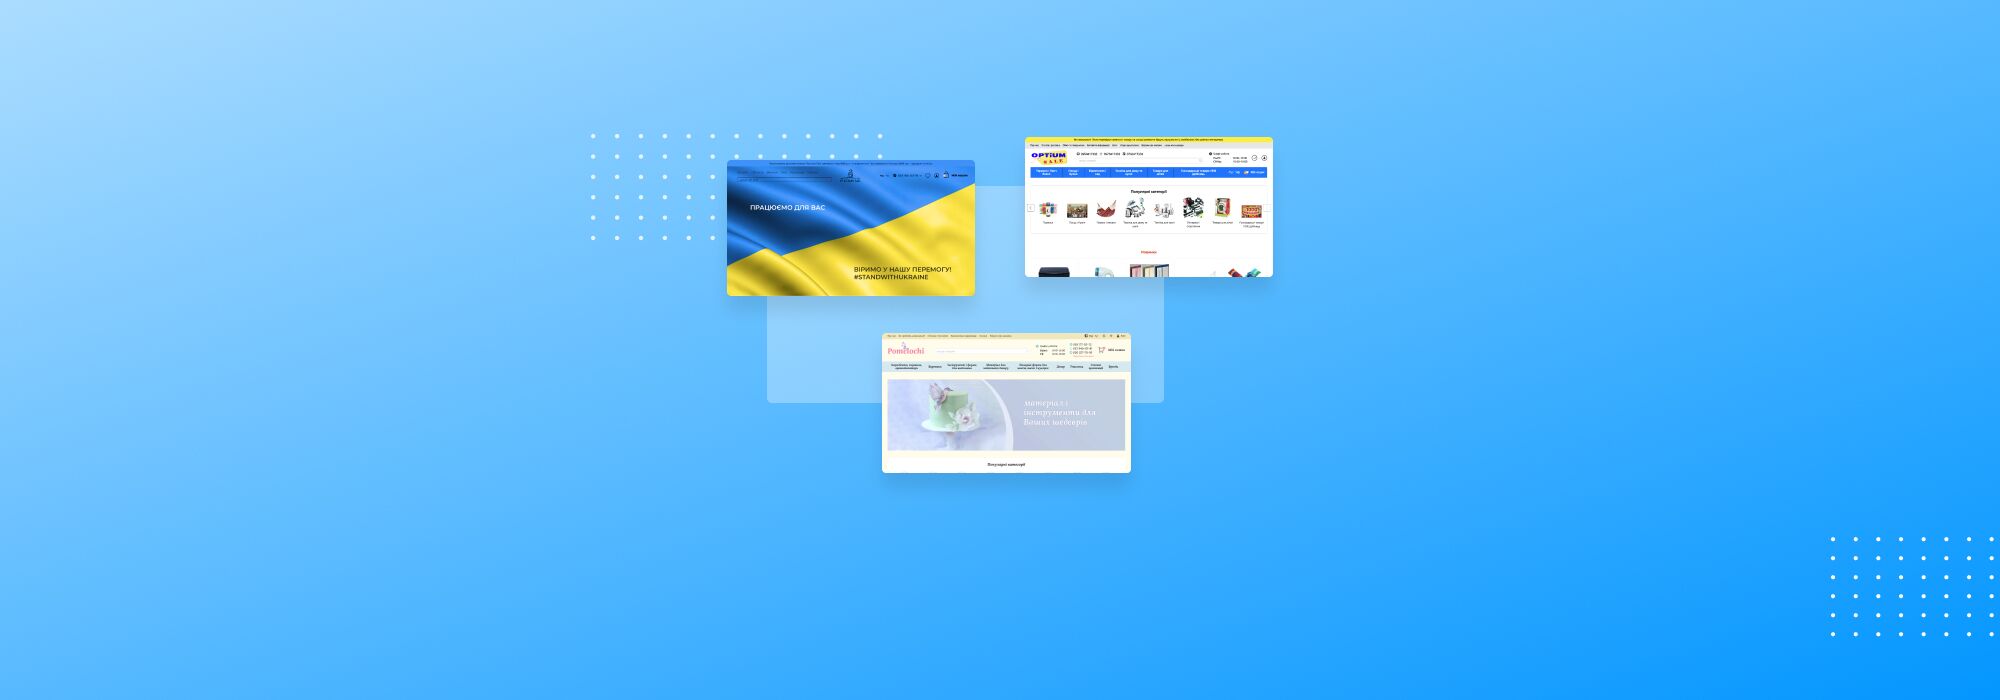 Как работают украинские интернет-магазины во время войны: часть вторая